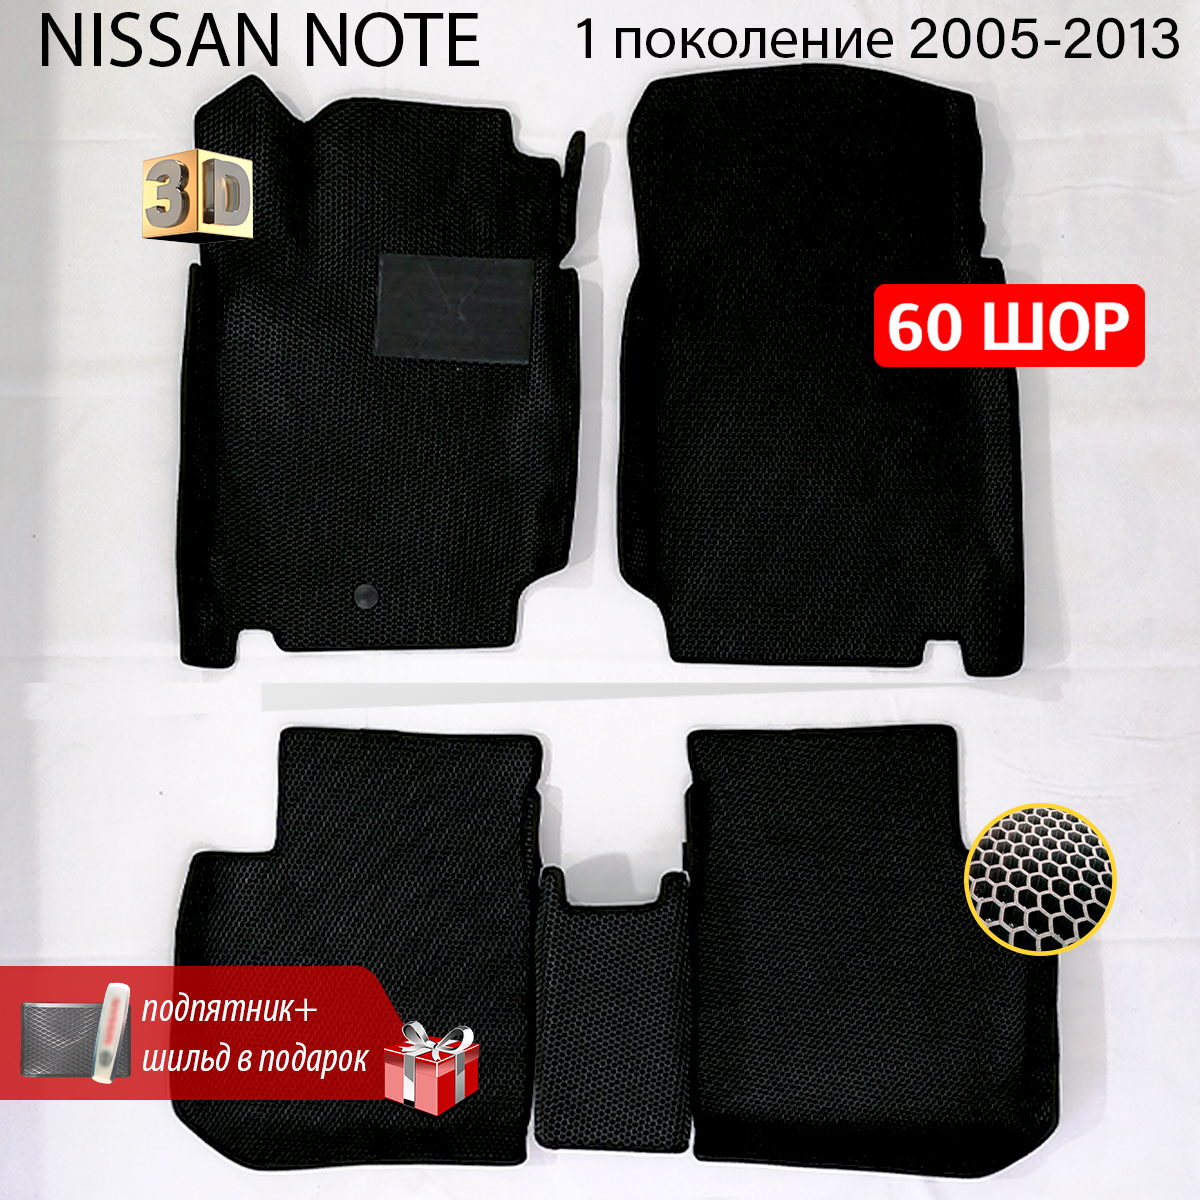 EVA коврики для автомобиля NISSAN NOTE (Ниссан Ноут) 1 поколение 2005-2013 с бортами, коврики эва в салон